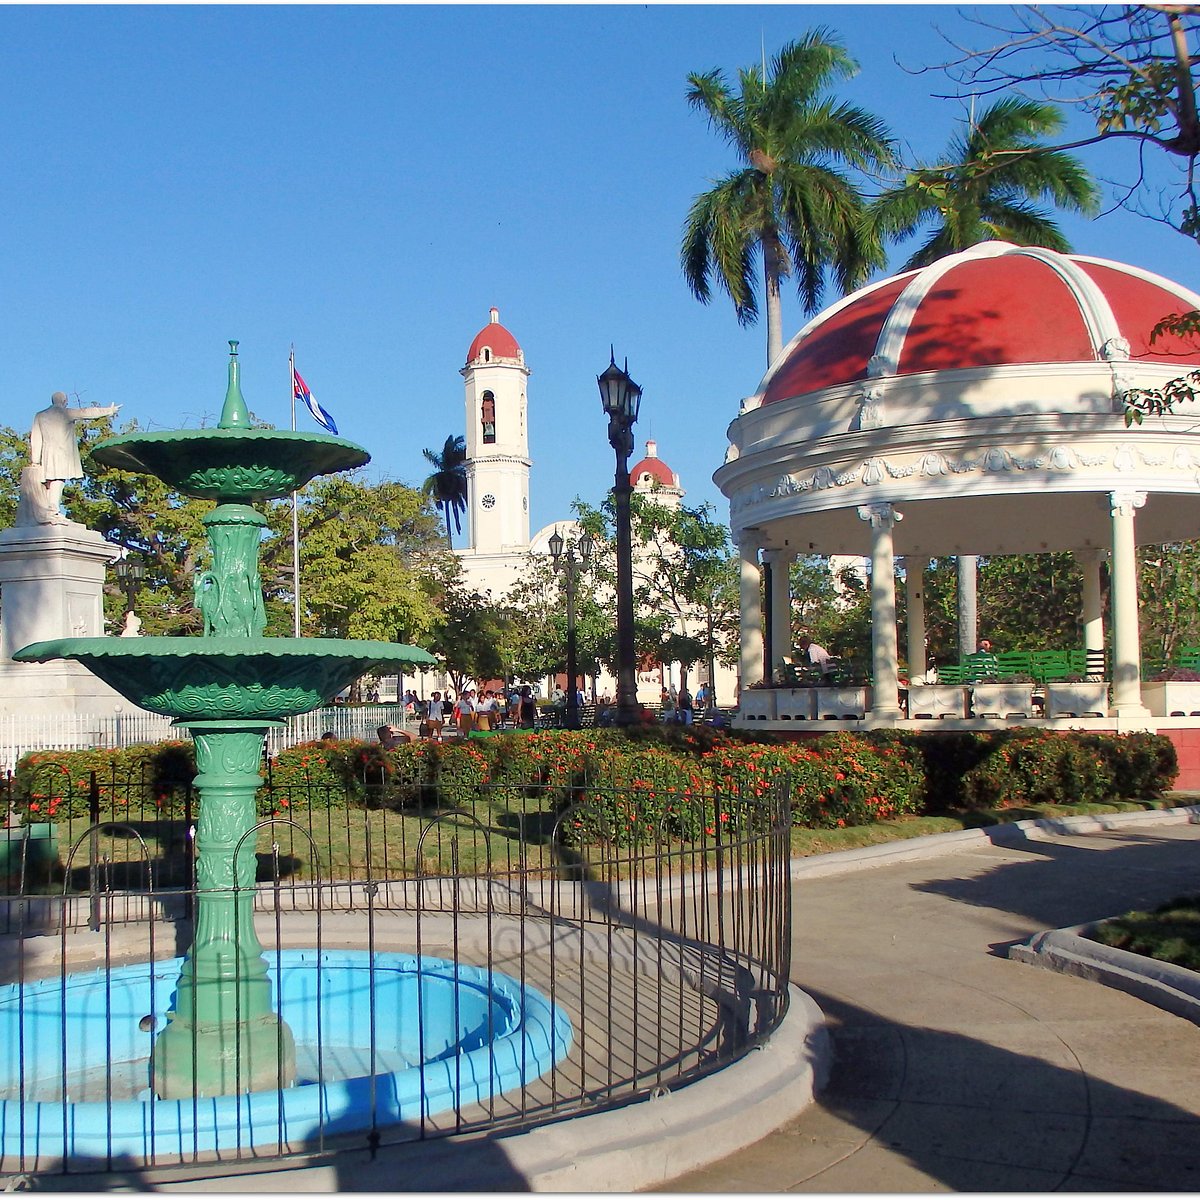 cienfuegos cuba tourist attractions